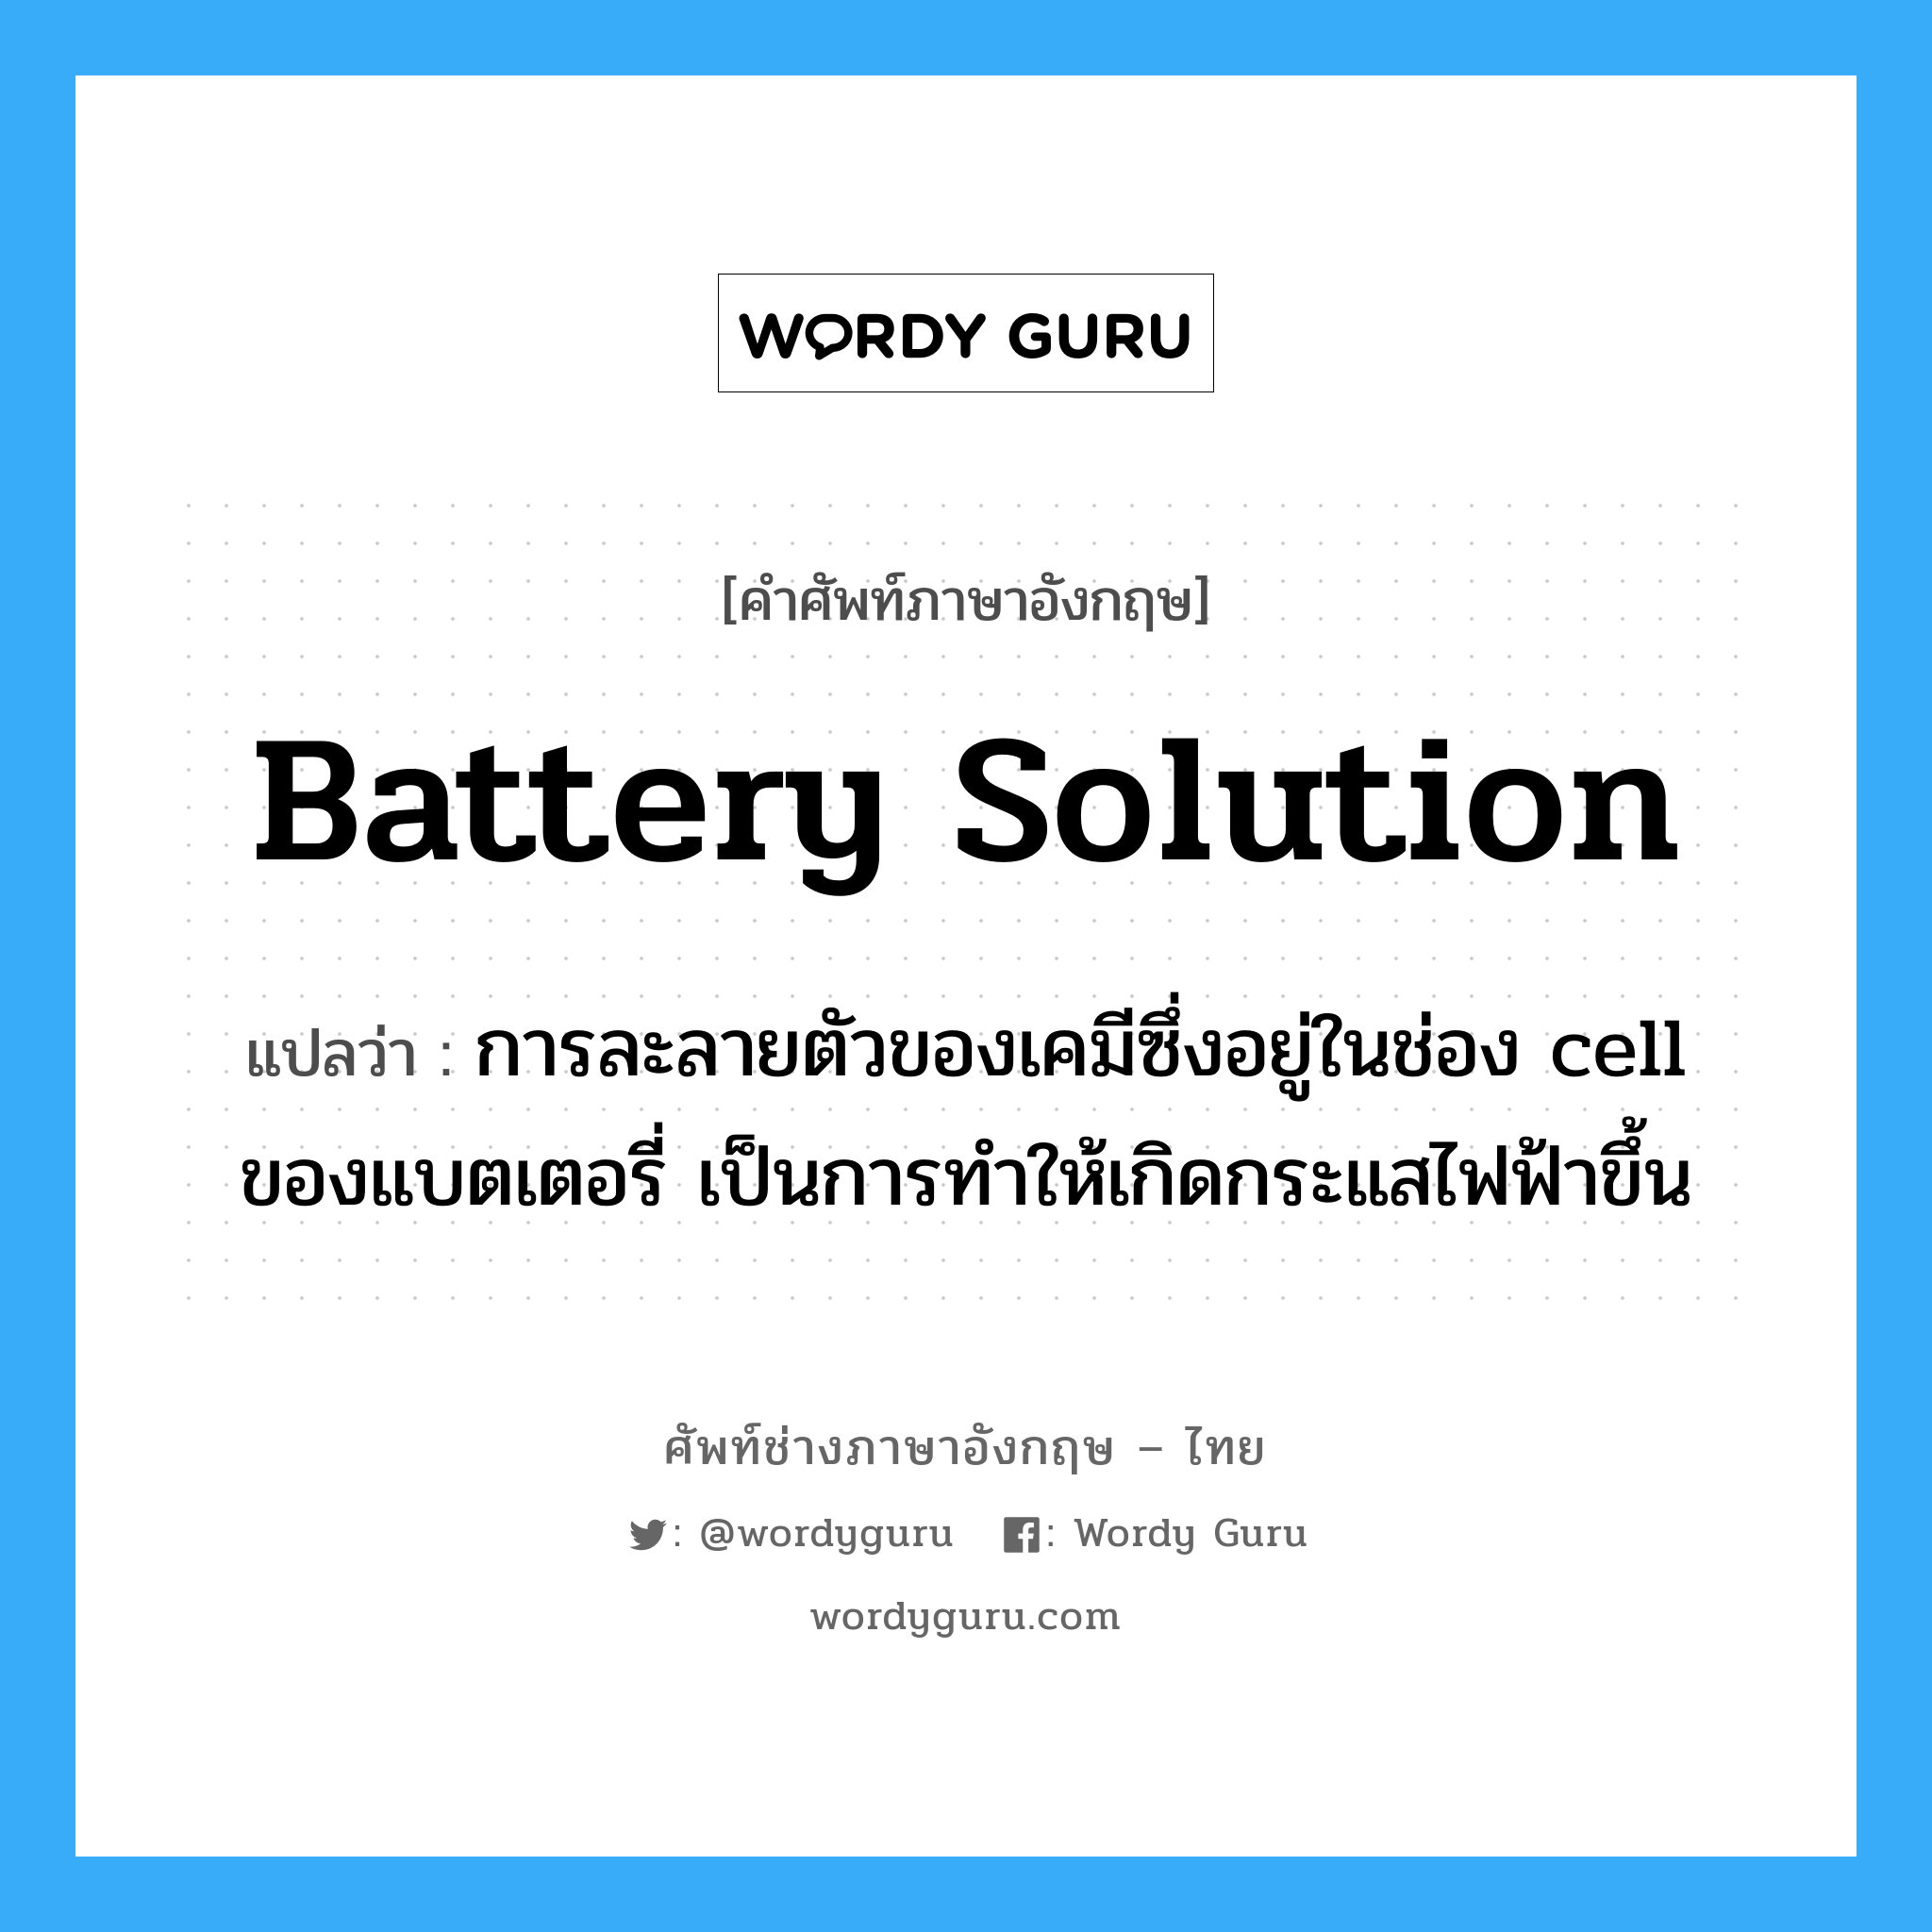 battery solution แปลว่า?, คำศัพท์ช่างภาษาอังกฤษ - ไทย battery solution คำศัพท์ภาษาอังกฤษ battery solution แปลว่า การละลายตัวของเคมีซึ่งอยู่ในช่อง cell ของแบตเตอรี่ เป็นการทำให้เกิดกระแสไฟฟ้าขึ้น